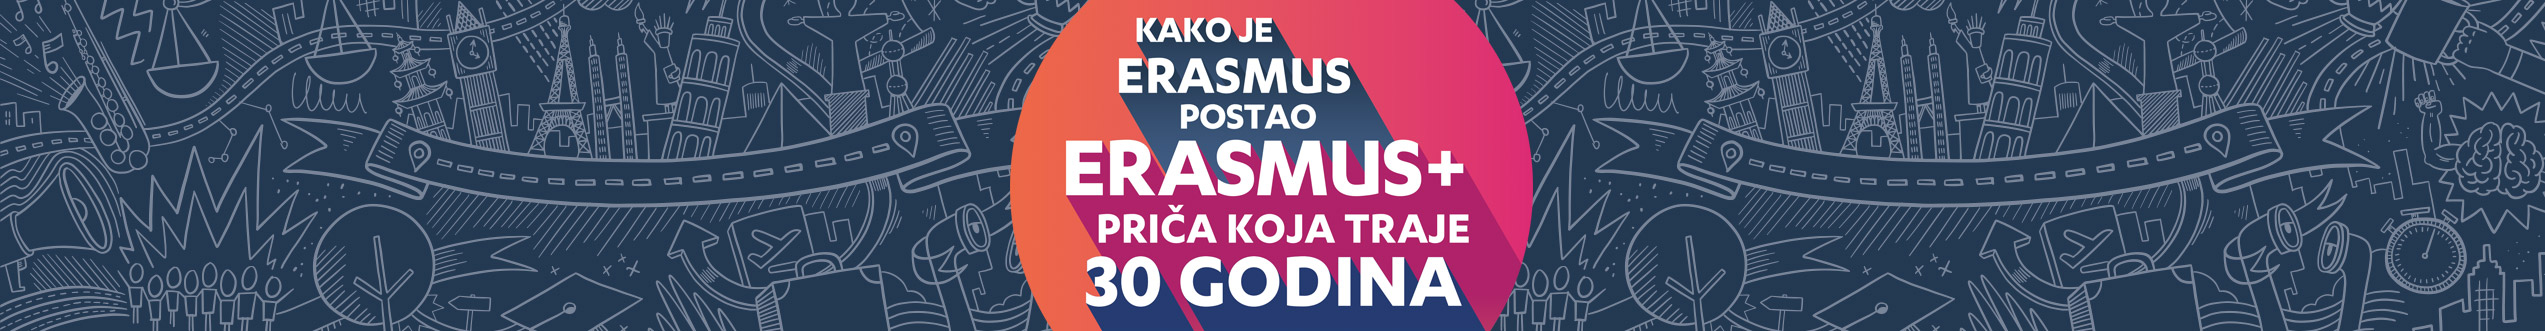 Strukovnjaci, prijavite se na zadarsku radionicu za pisanje projekata za program Erasmus+ do 20. rujna - Slika 1